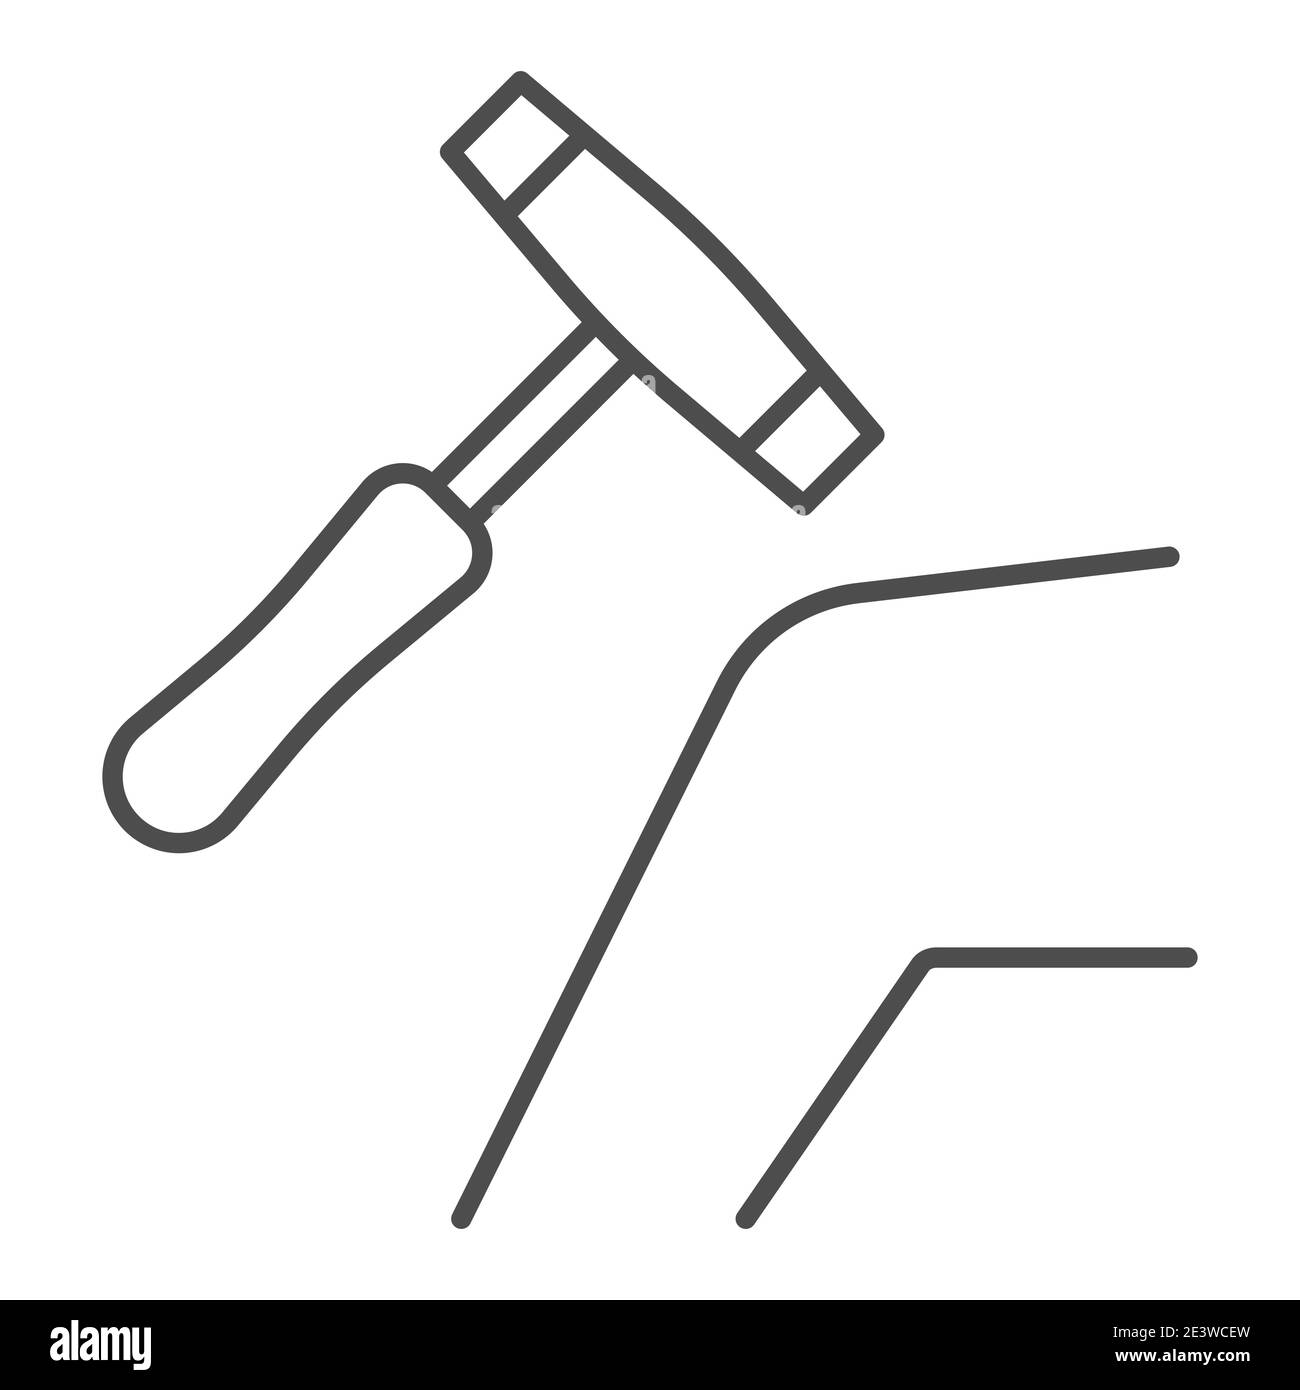 Rodilla humana con martillo médico icono de línea delgada, concepto de  cuidado de la salud, comprobación de la reacción de la rodilla con signo de  martillo sobre fondo blanco, martillo de reflejo